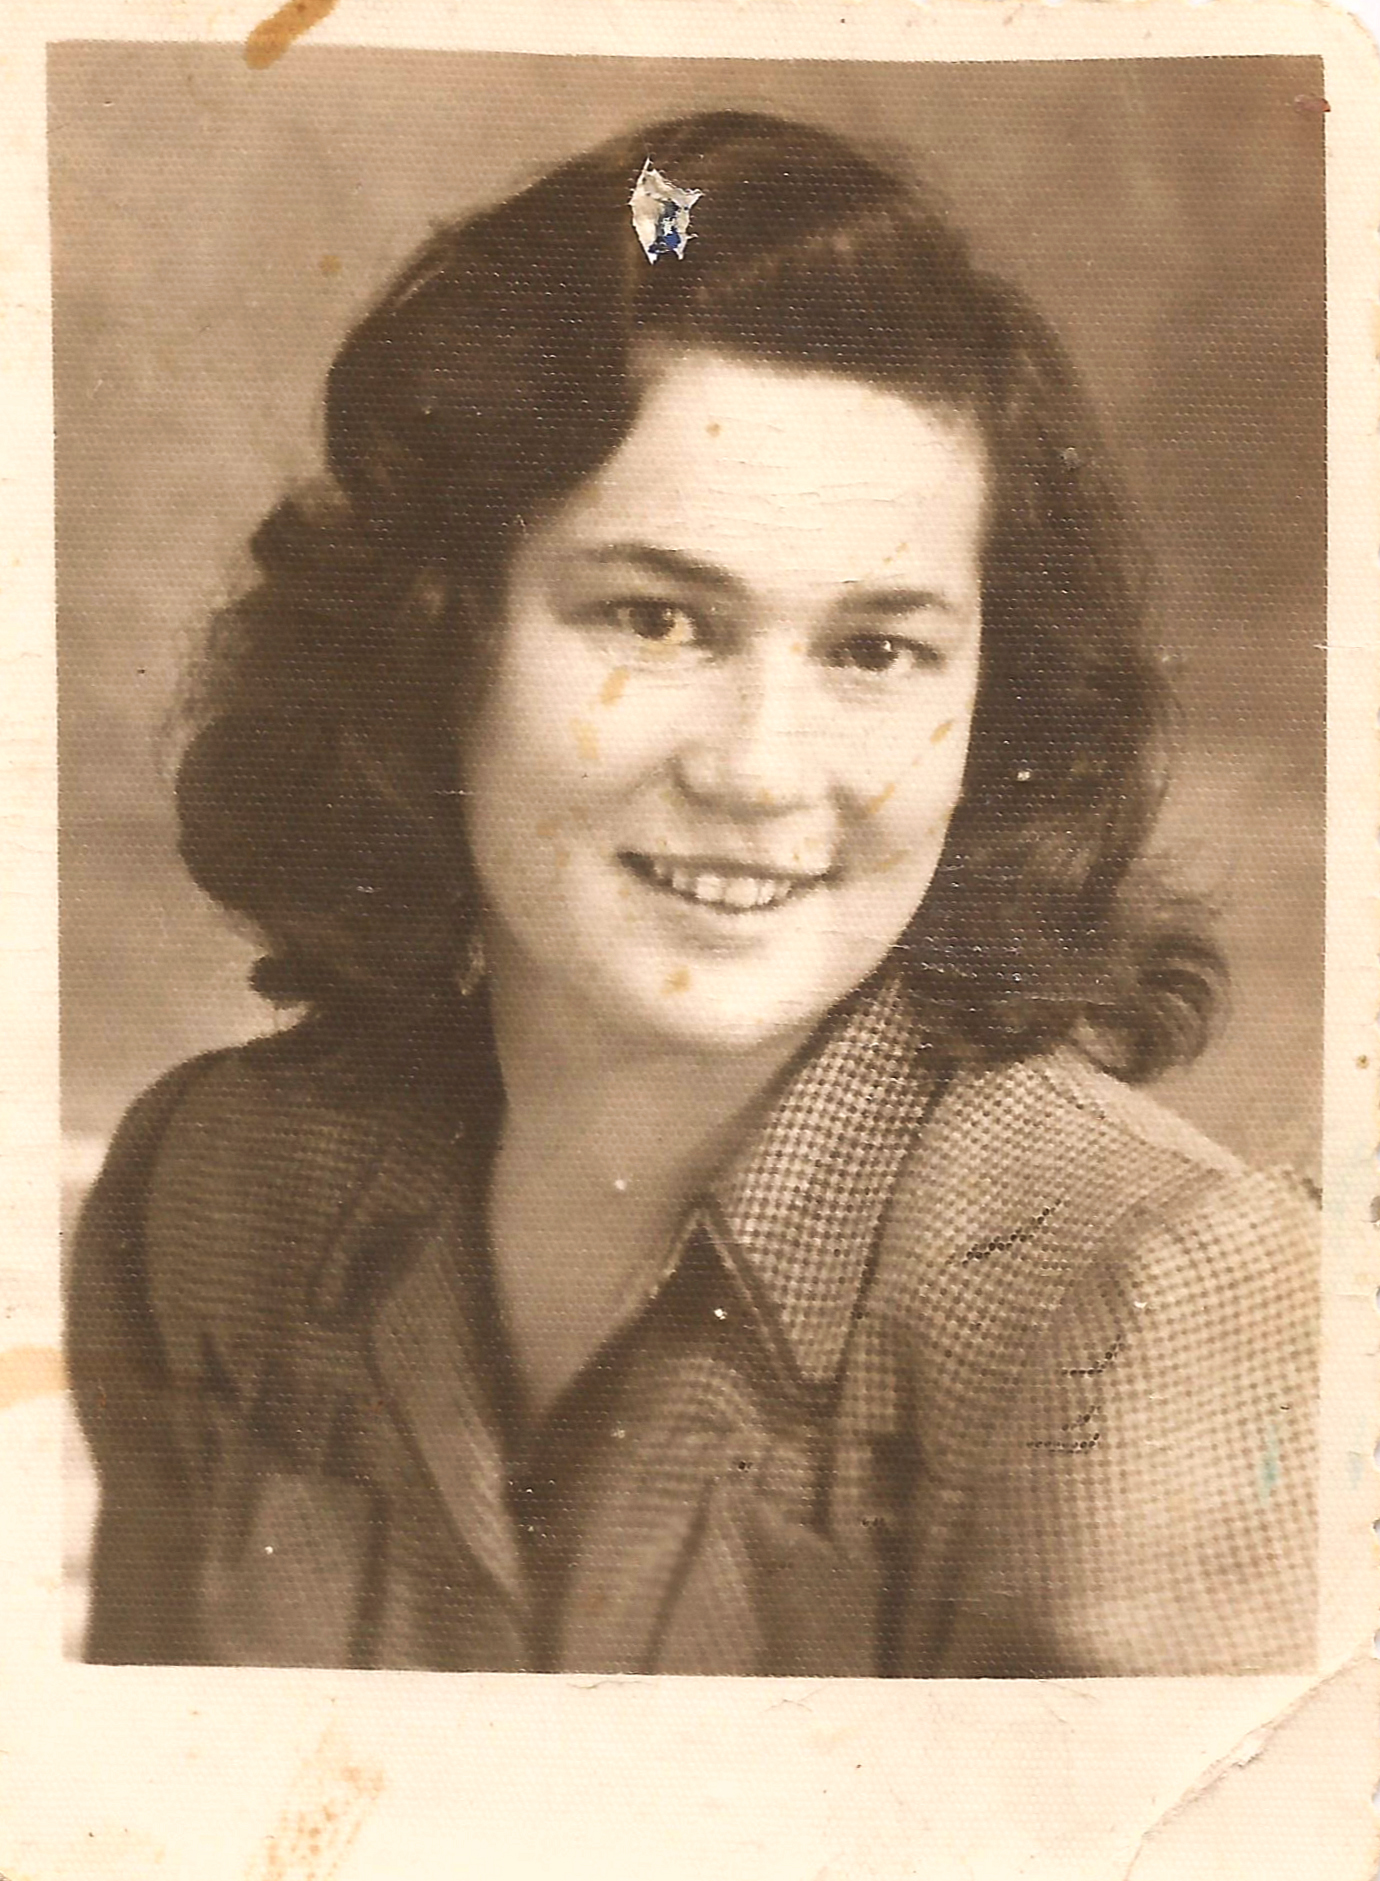 Passport photograph of Sheindi Ehrenwald (now: Sheindi Miller-Ehrenwald), 1947 © Private collection Sheindi Miller-Ehrenwald, Jerusalem